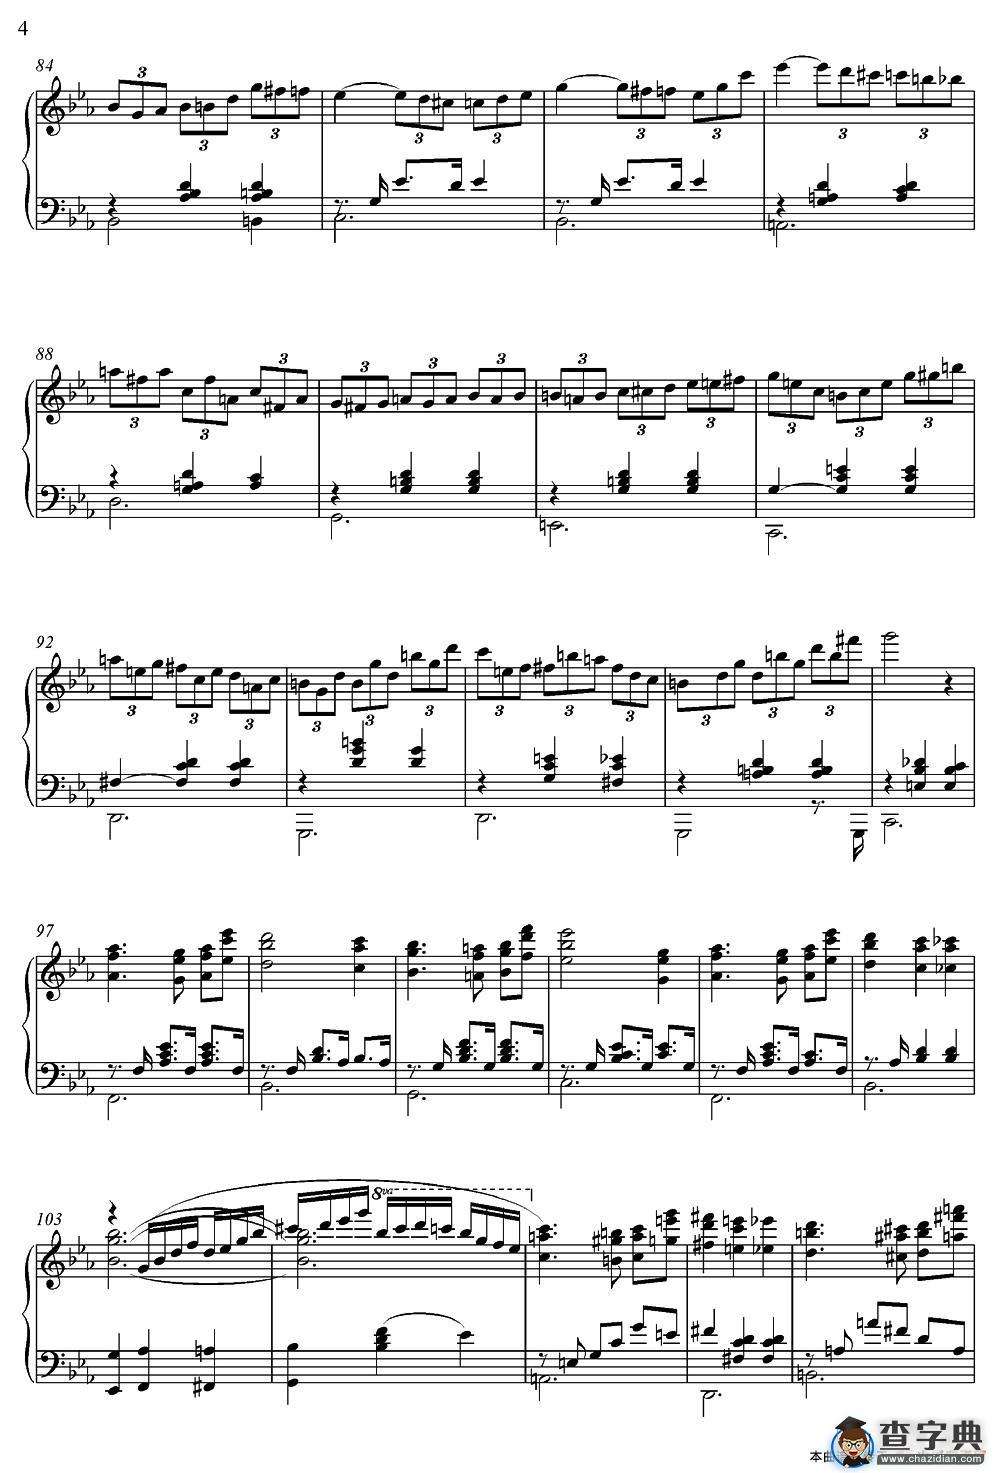 海上钢琴师钢琴谱1900(海上钢琴师钢琴谱playing love简谱)